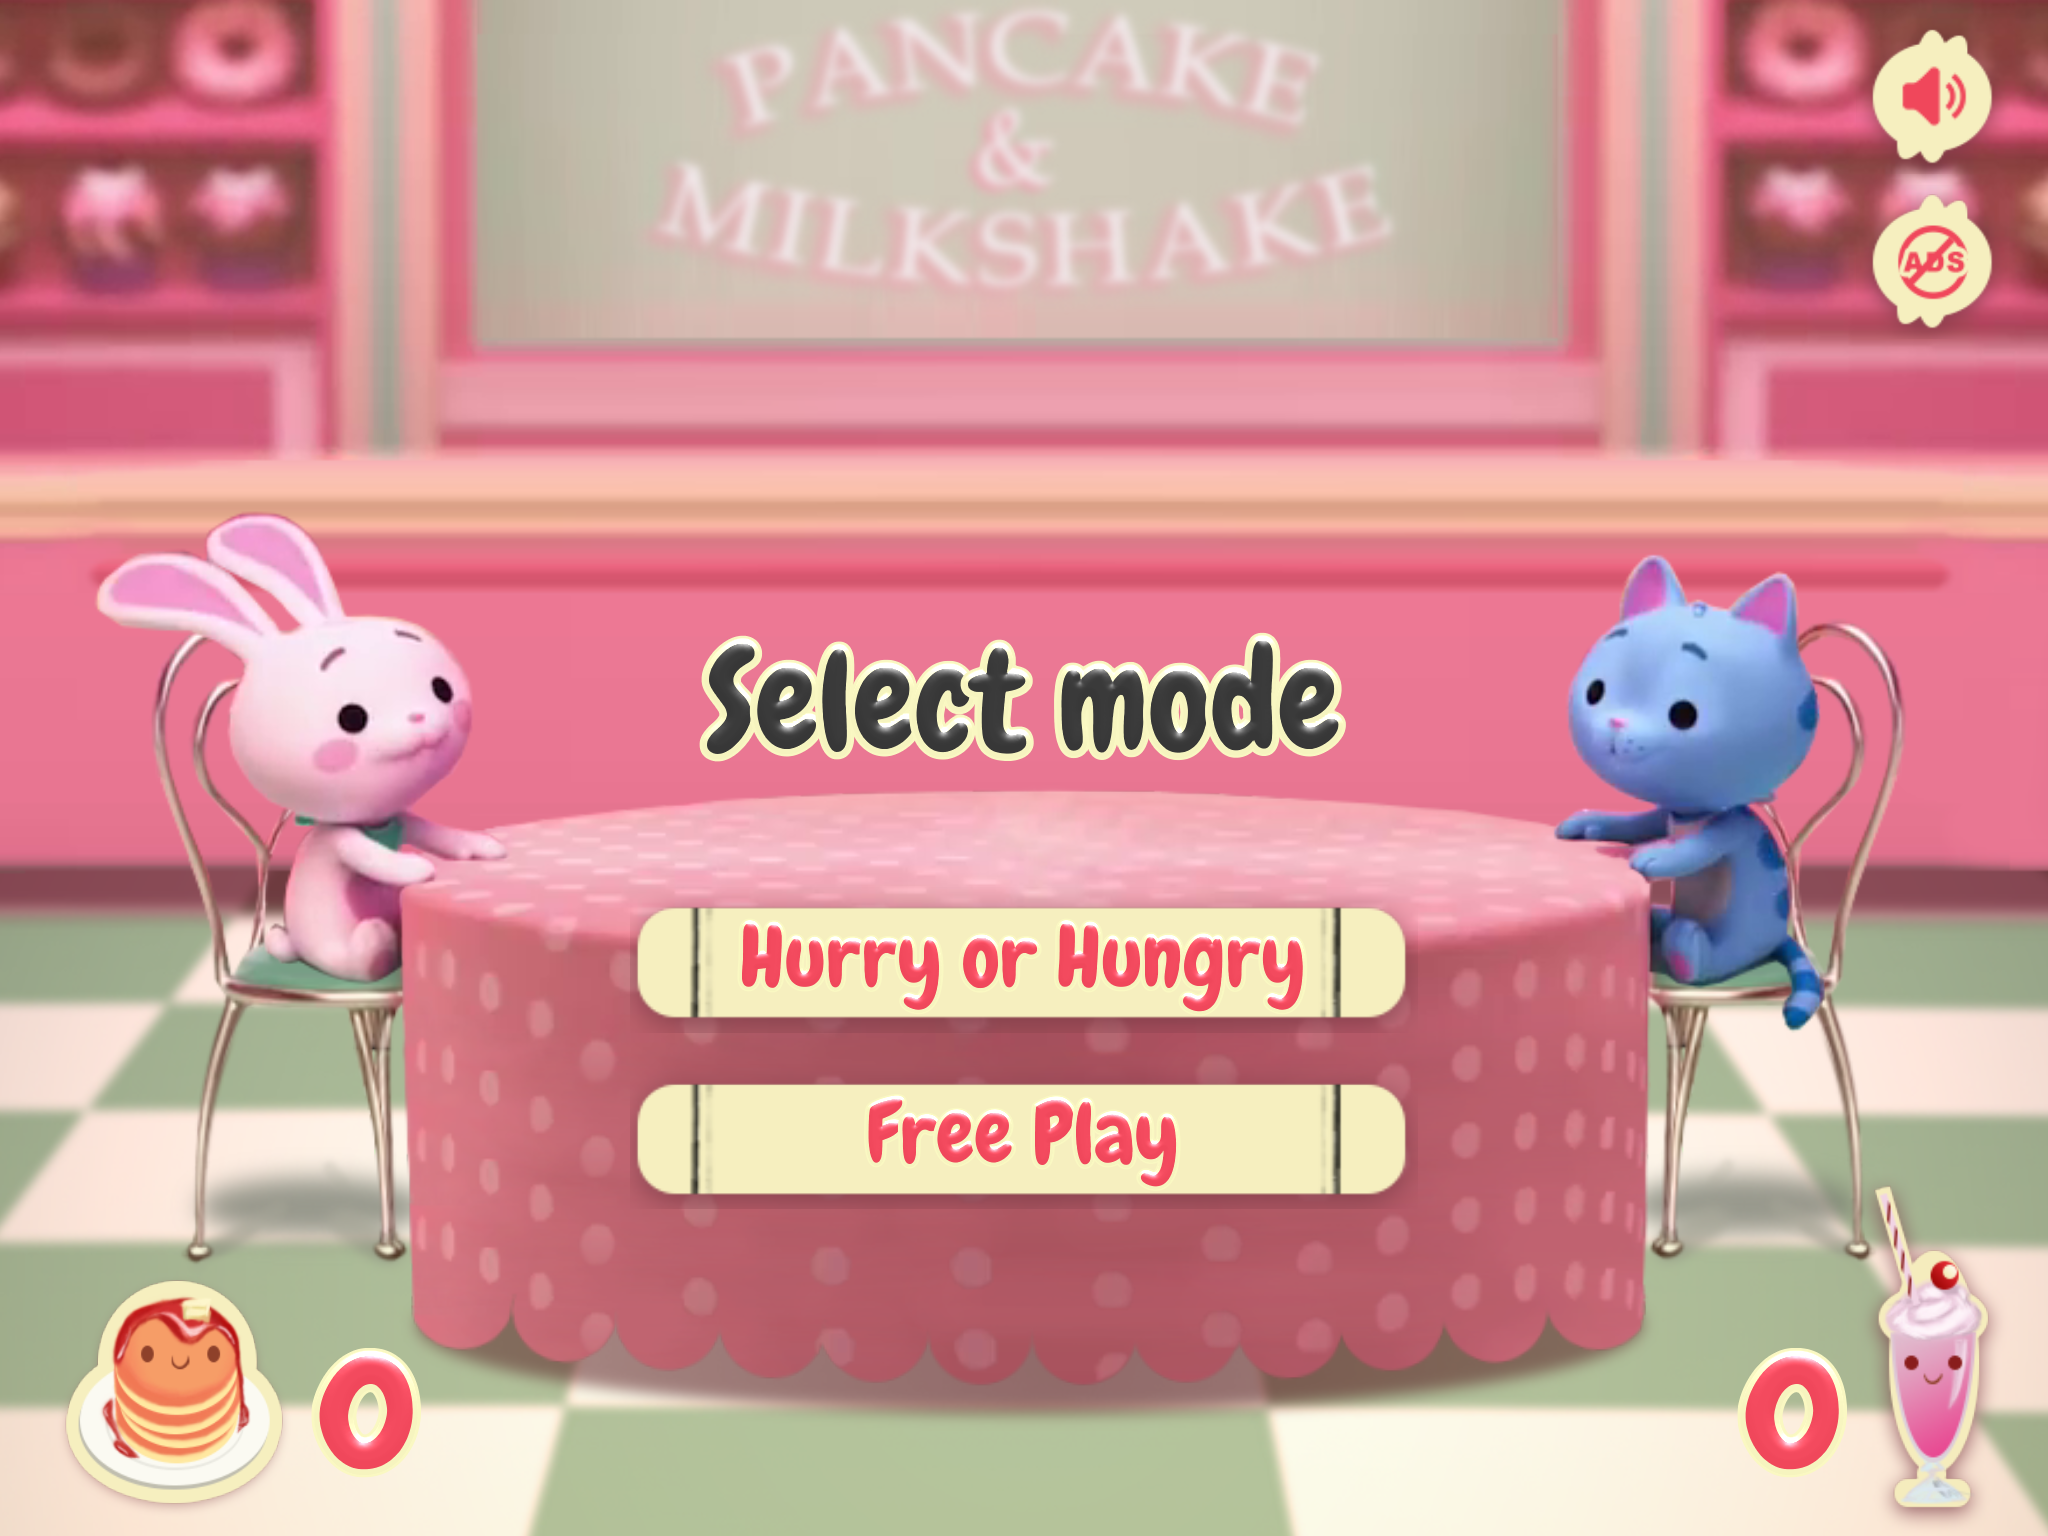 Screenshot 1 of Pancake និង Milkshake! 0.1